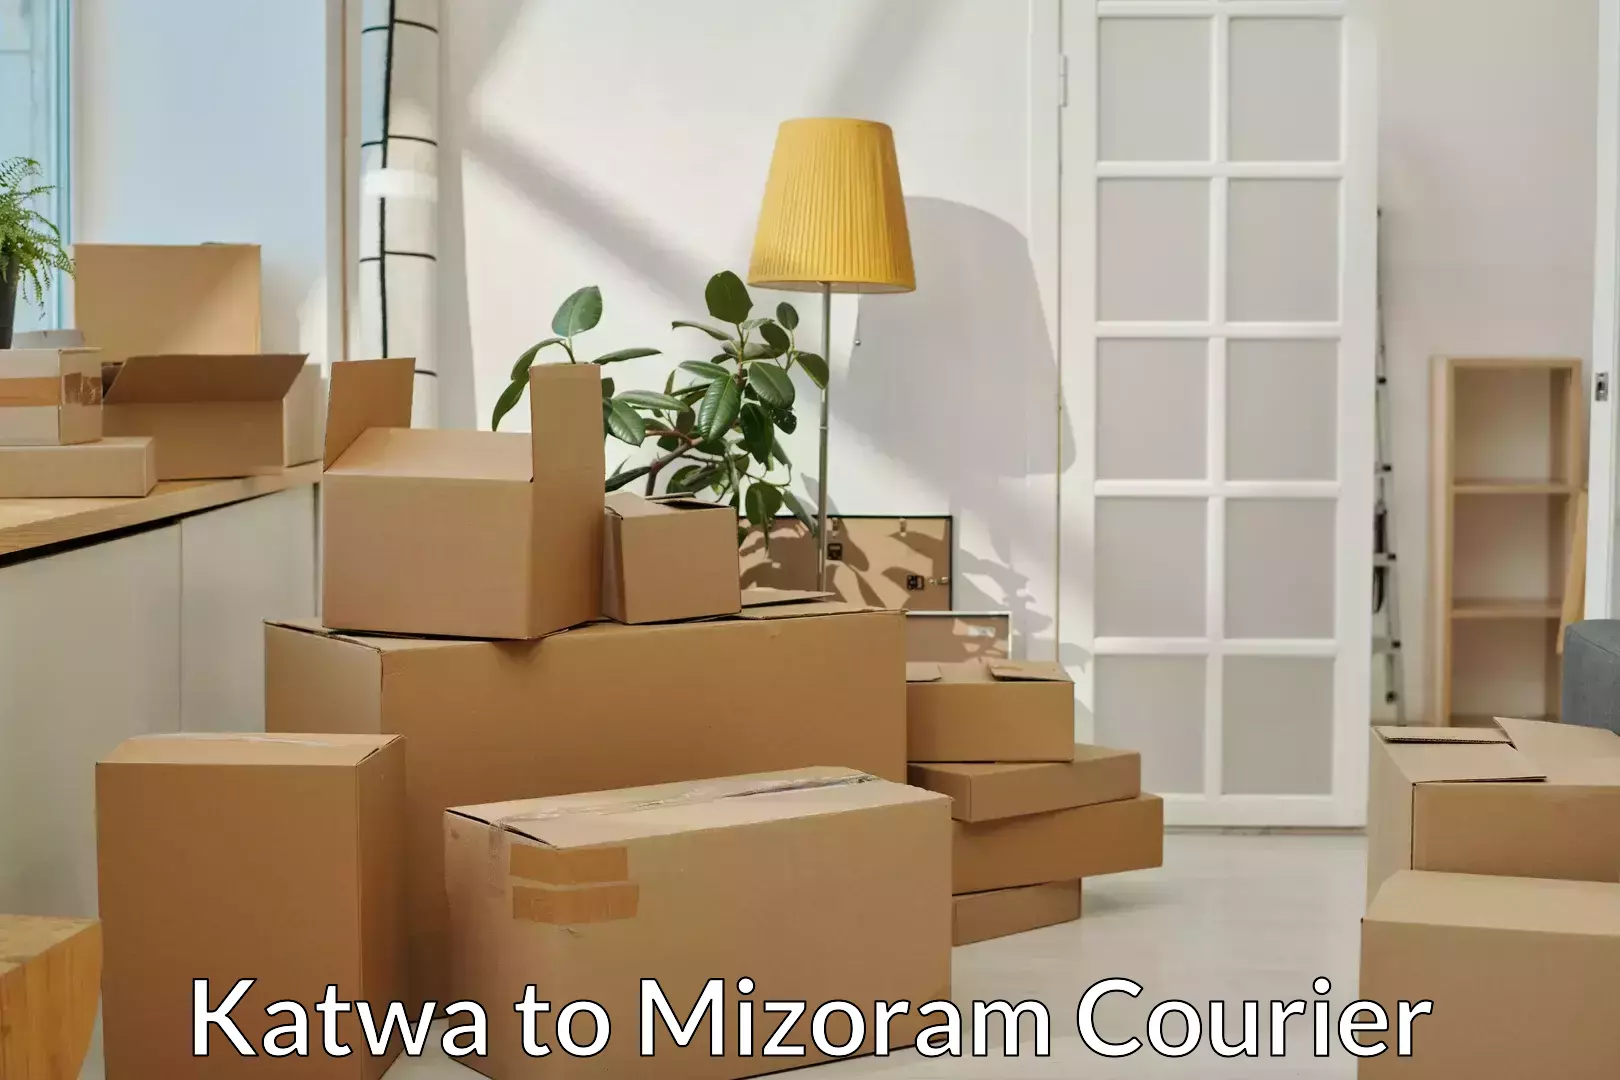 Furniture moving experts Katwa to Mizoram